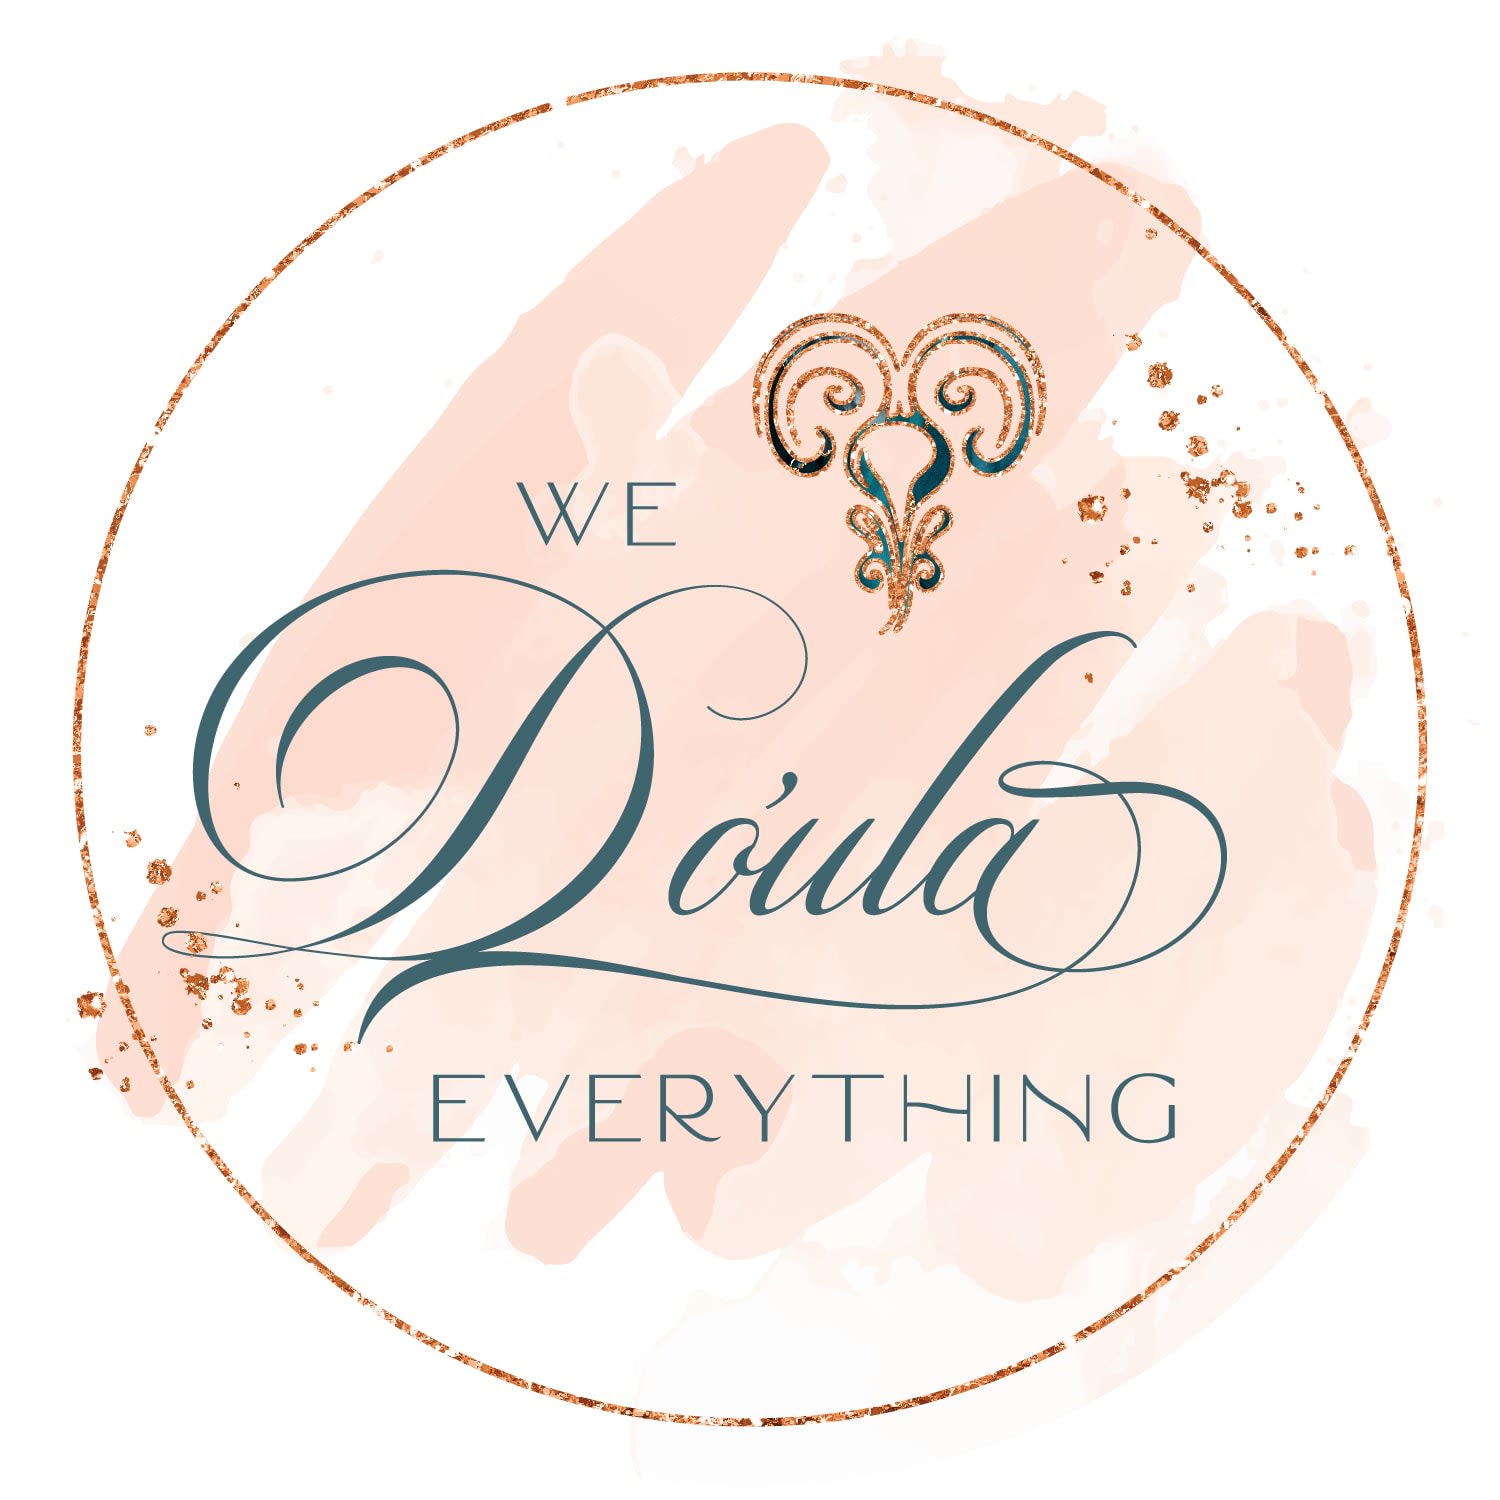 We Do'ula Everything